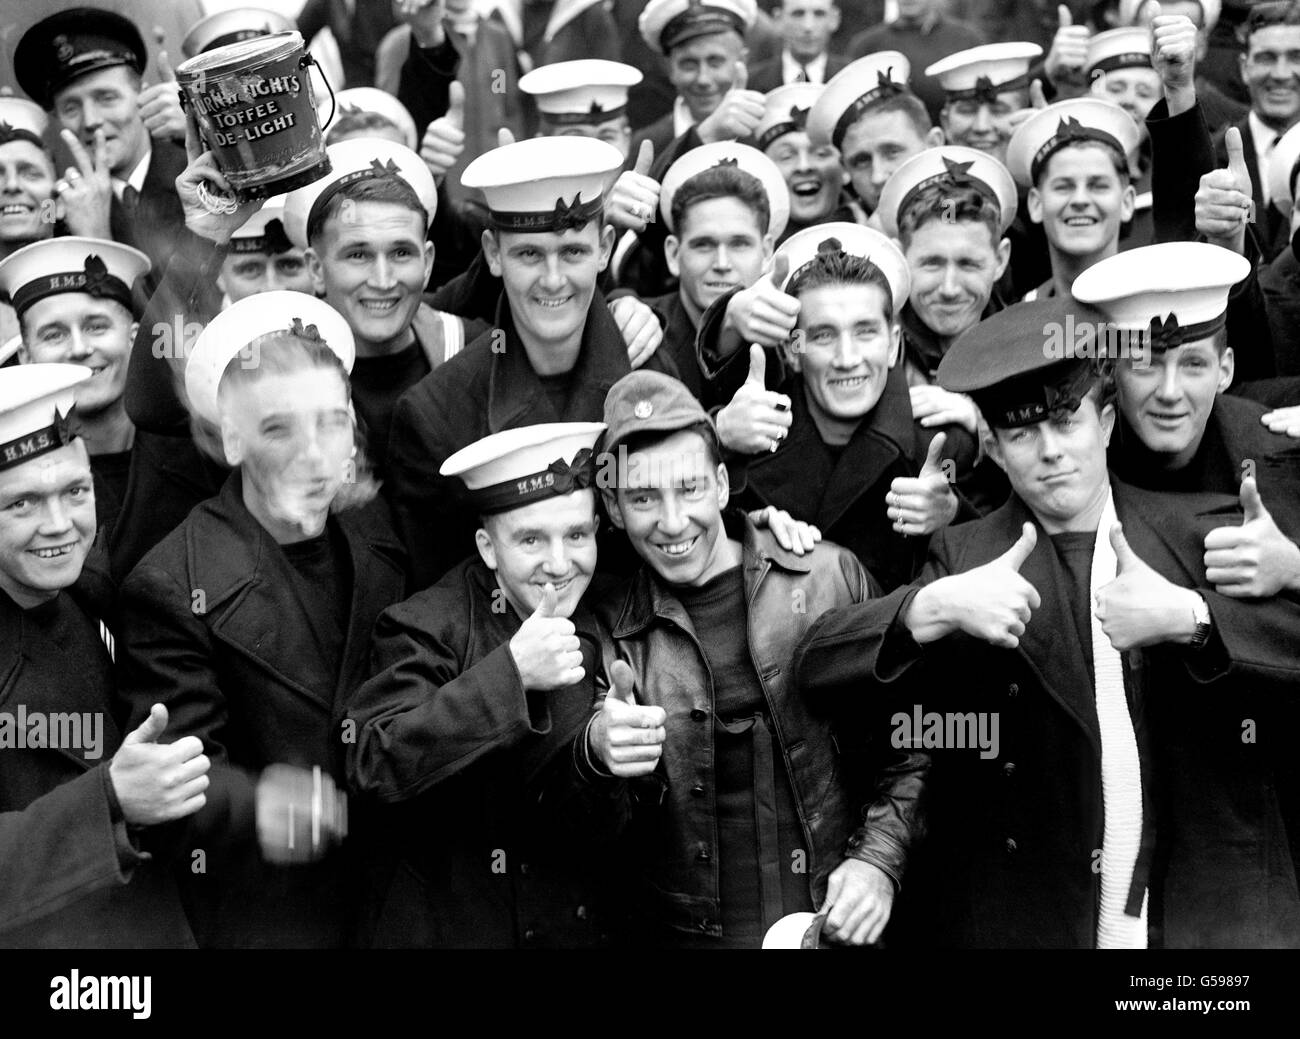 Les forces militaires britanniques - Royal Navy - rapatriement - PORTSMOUTH - 1945 Banque D'Images